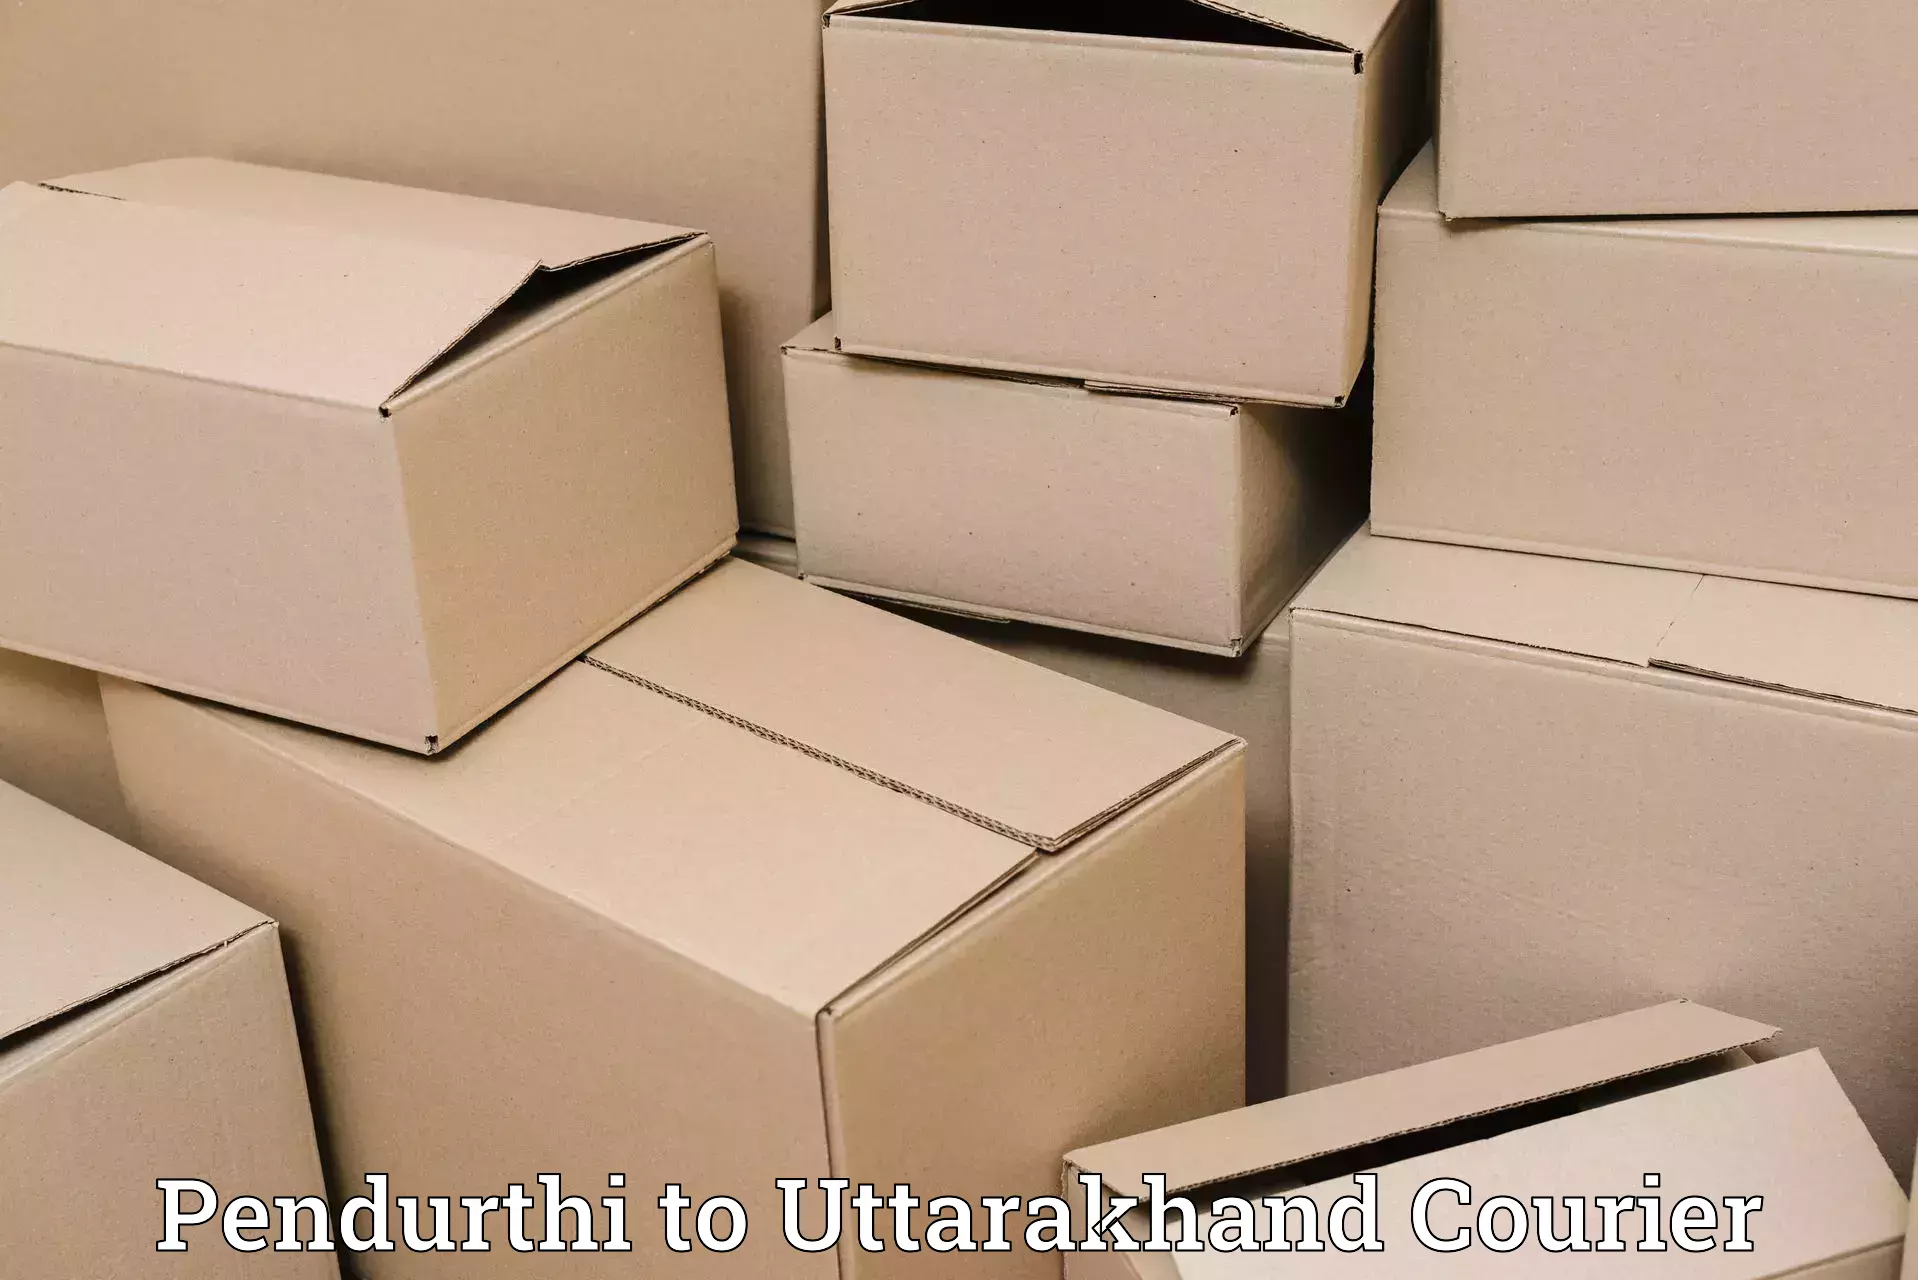 International courier rates Pendurthi to Uttarakhand